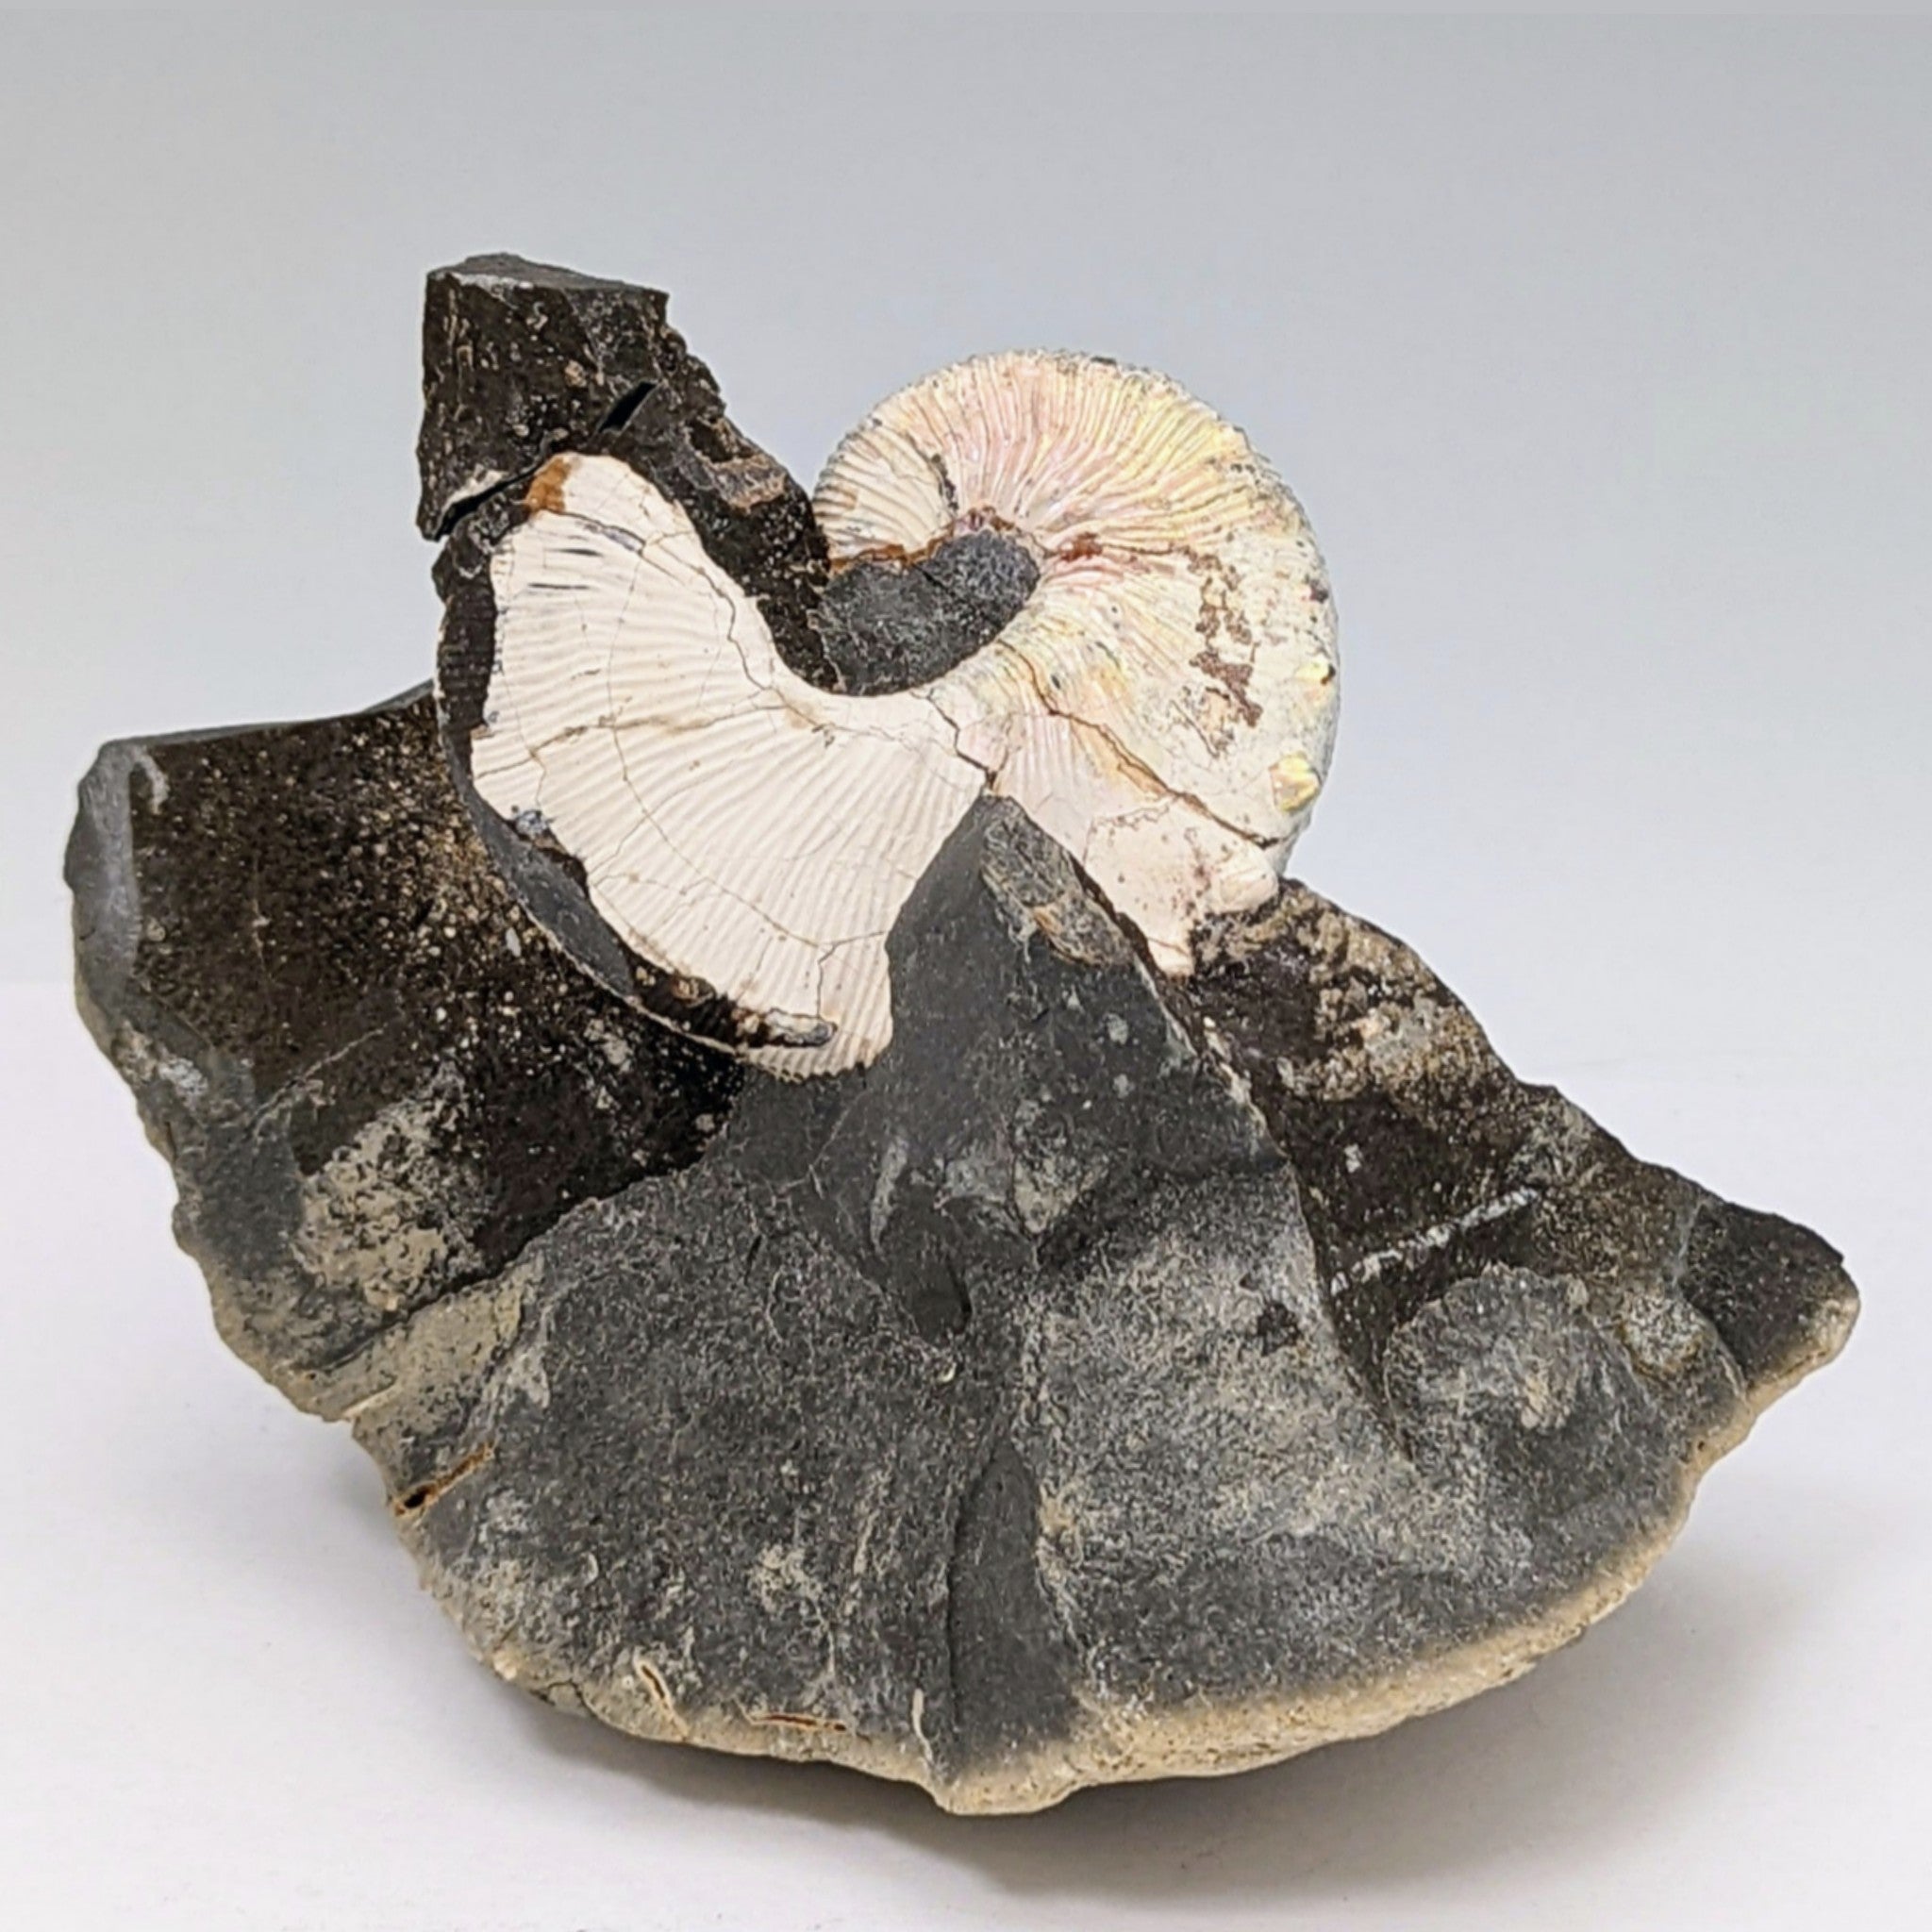 Scaphitid Ammonite